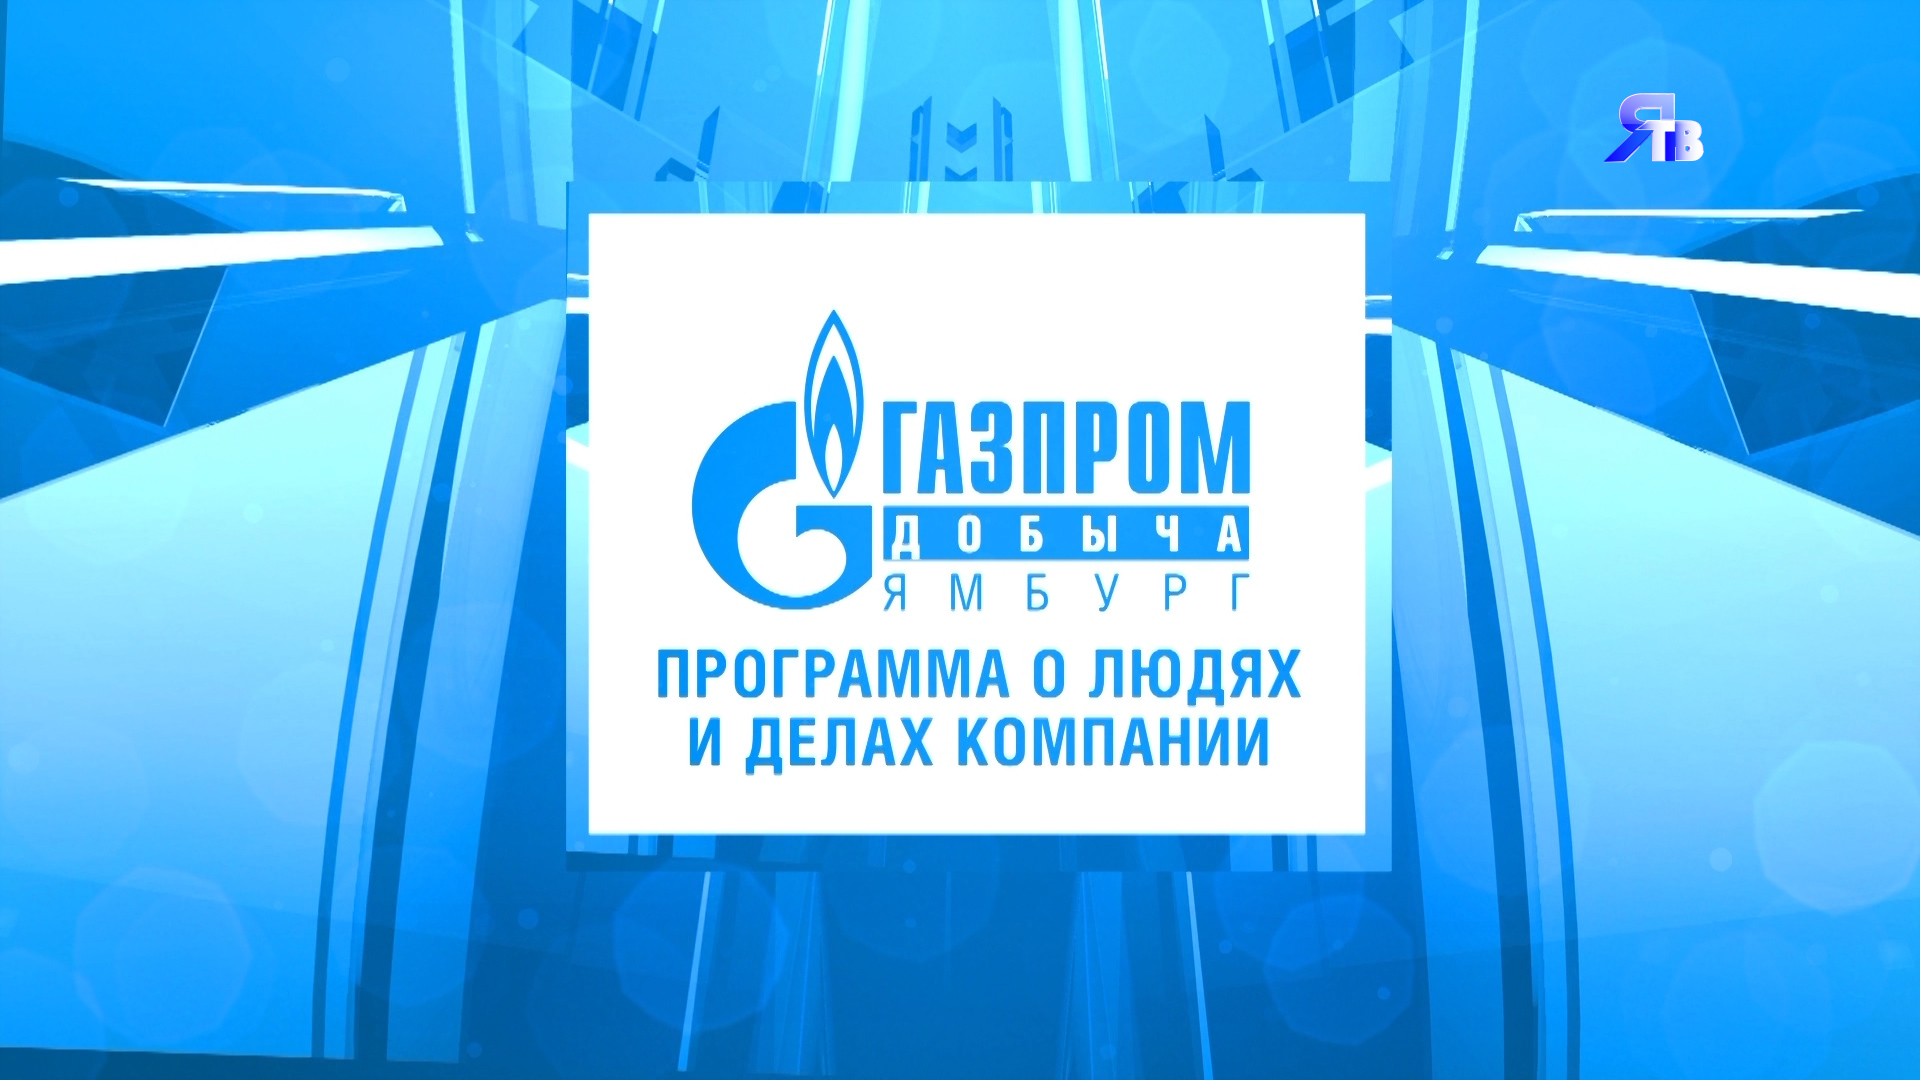 21 ноября / Программа о людях делах компании "Газпром добыча Ямбург"